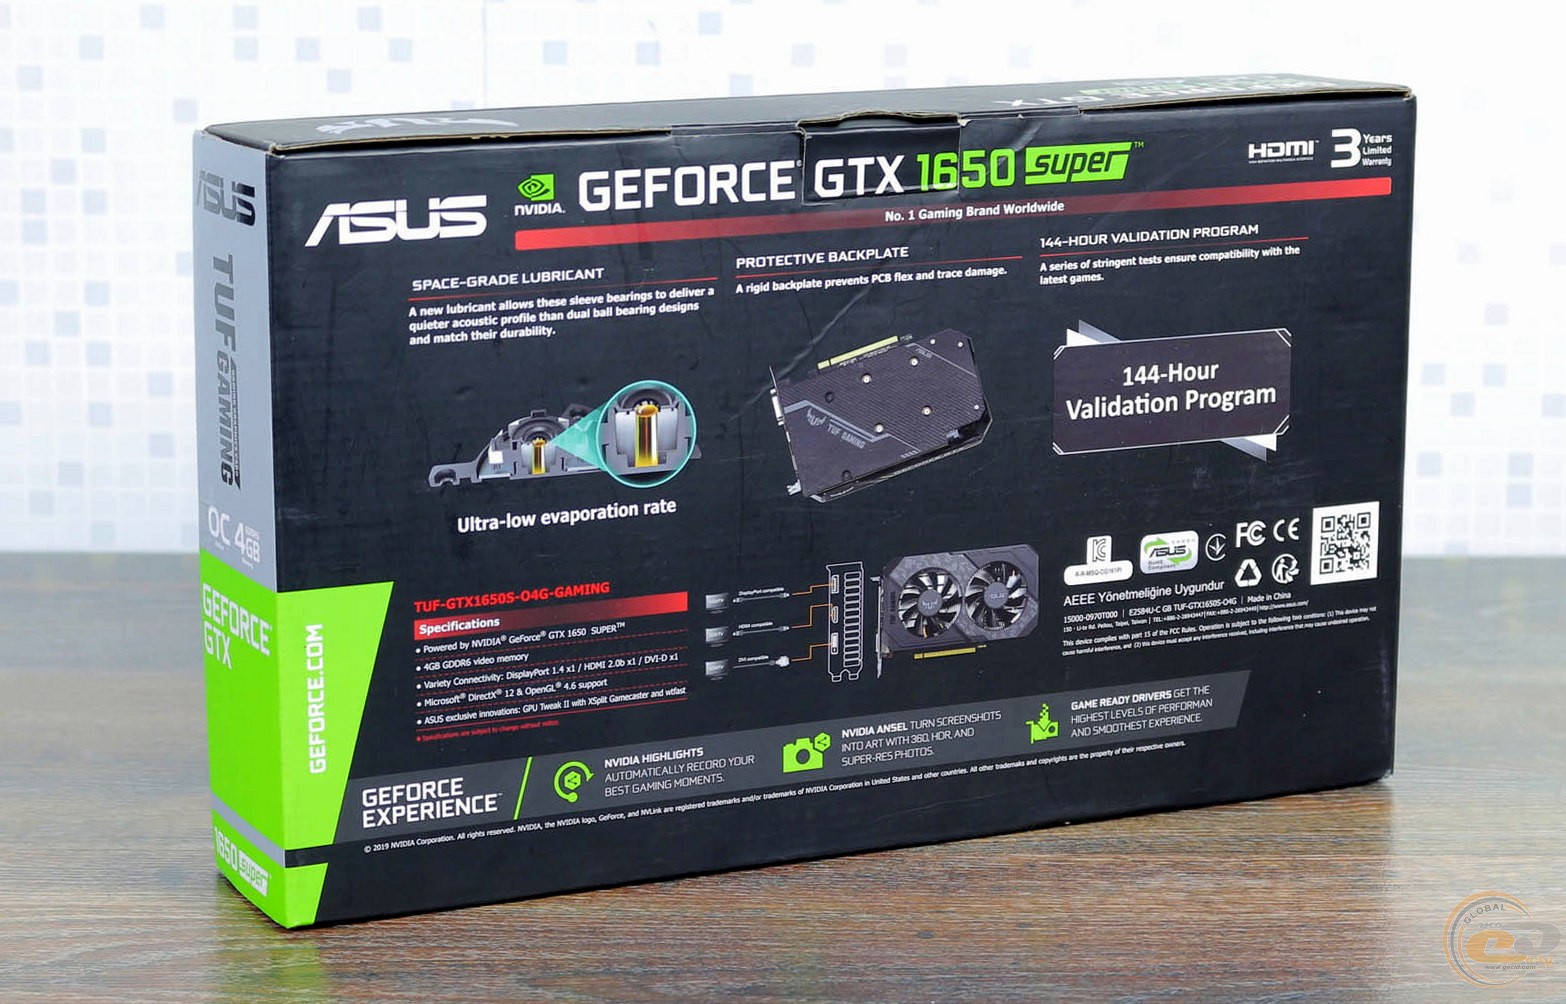 Asus geforce rtx 4080 super tuf gaming. ASUS TUF GTX 1650 super. GEFORCE GEFORCE GTX 1650 super. GEFORCE GTX 1650 коробка. GEFORCE GTX 1650 super коробка.